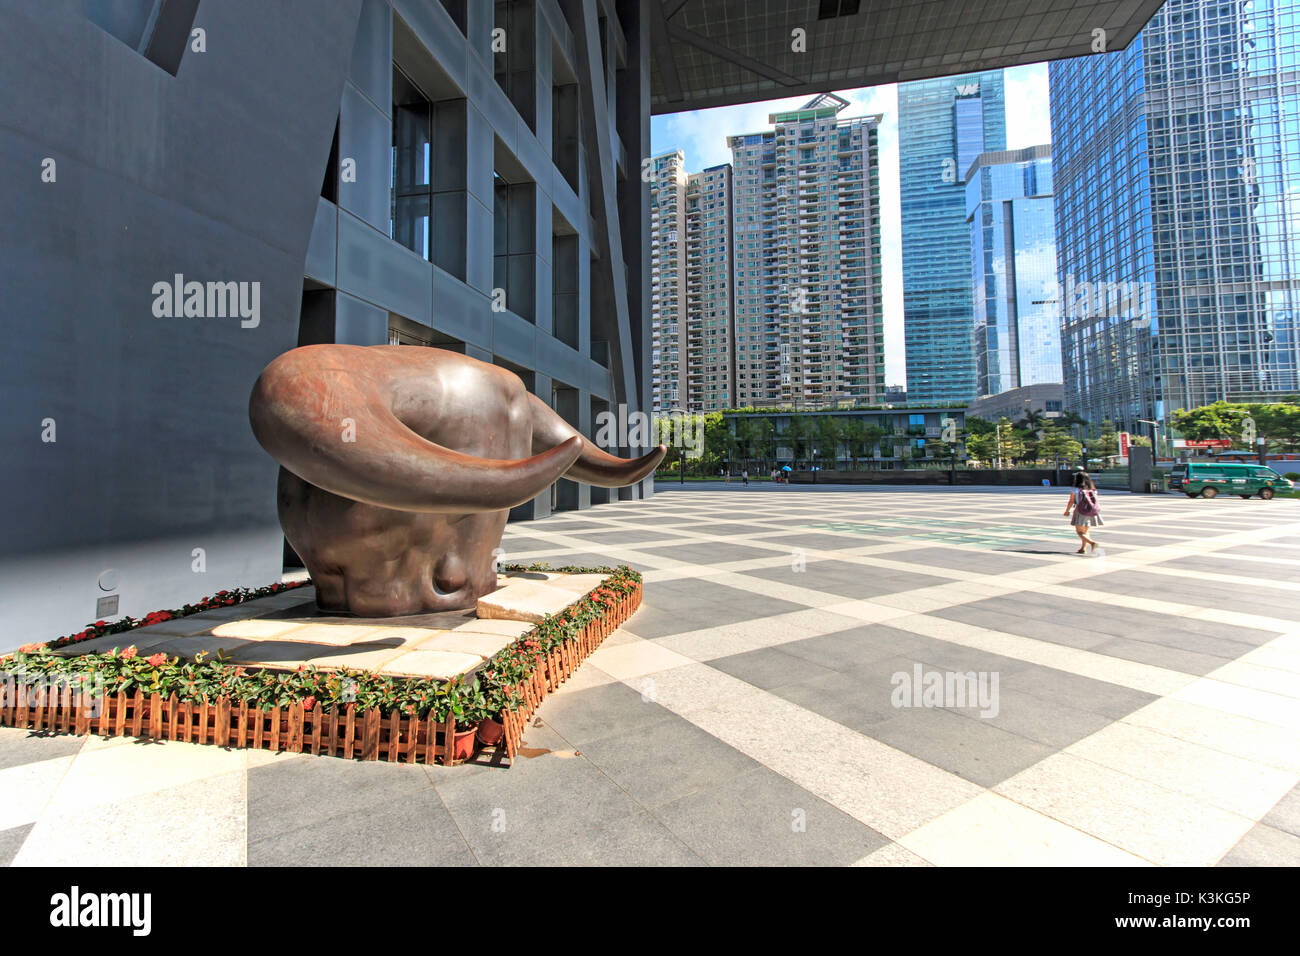 Börse Gebäude in Shenzhen, einer der drei Börsen in China, mit dem Kupfer Stier Statue im Vordergrund. Die anderen zwei Börsen in China sind in Hong Kong und Shanghai. Stockfoto